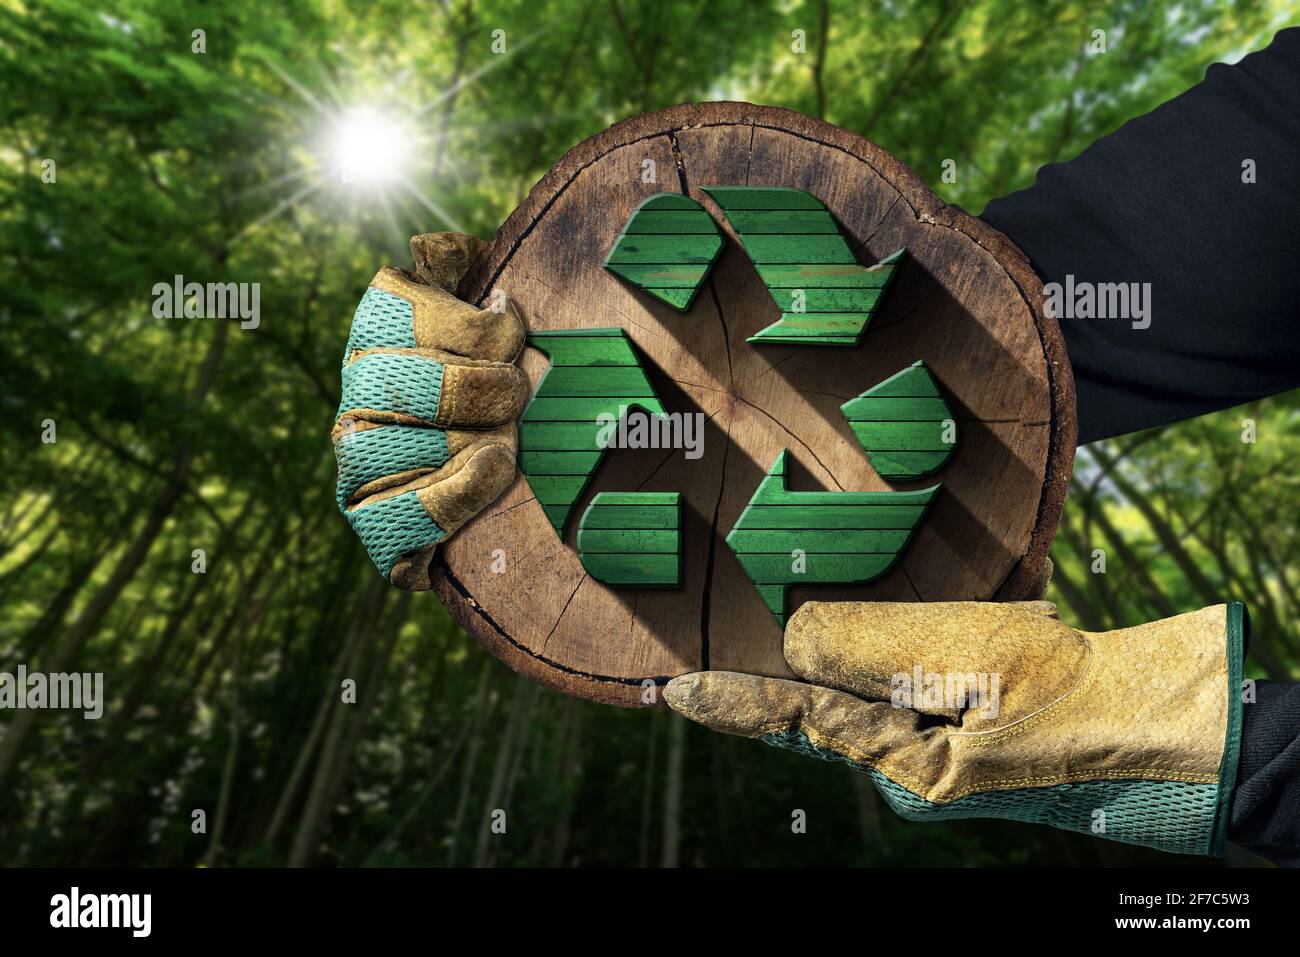 Manos enguantadas sosteniendo un símbolo de reciclaje hecho de madera verde y marrón dentro de una sección transversal de un tronco de árbol. Concepto de recursos sostenibles. Foto de stock